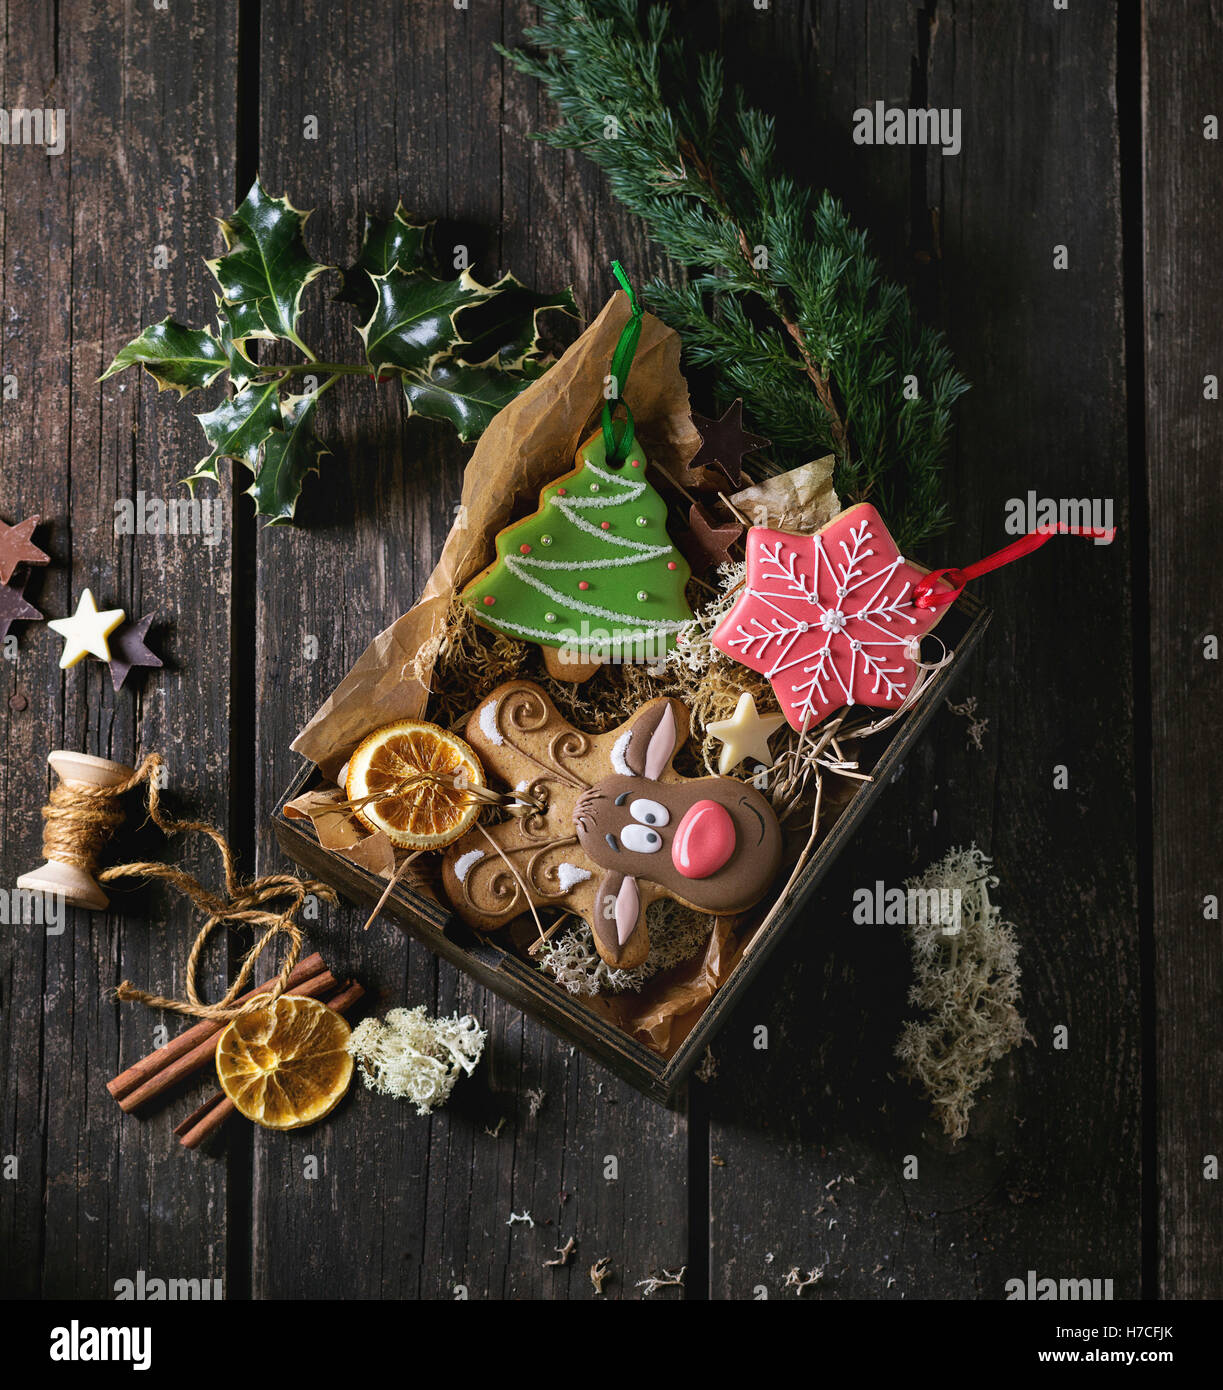 Natale fatti a mano gingerbreads modellato come albero di Natale, la renna Rudolph e forme di fiocco di neve in una scatola di legno su legno vecchio Foto Stock